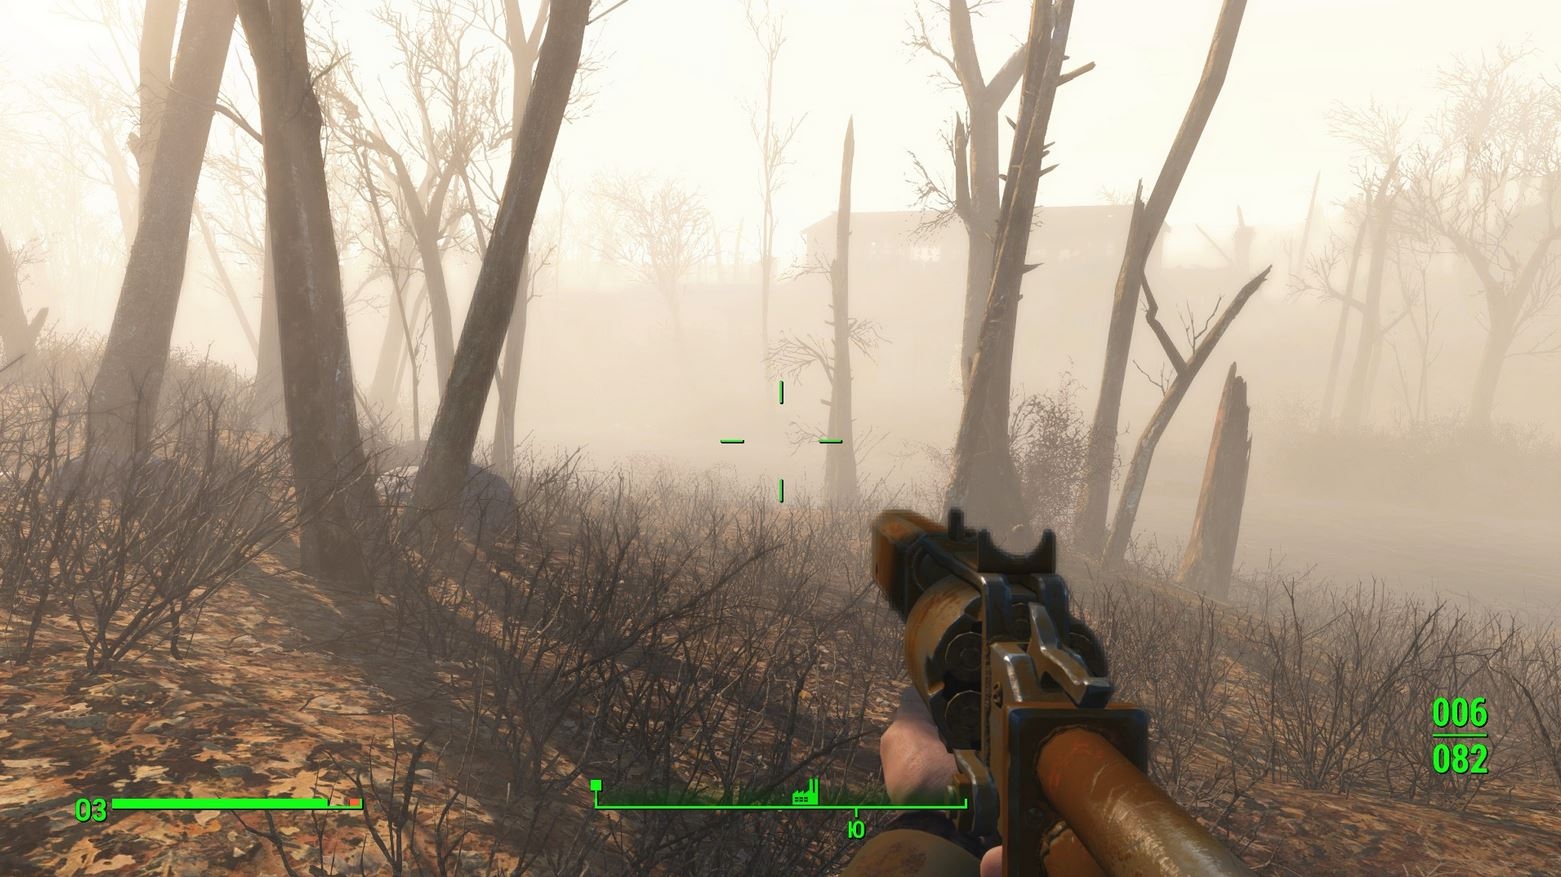 Скриншот из игры Fallout 4 под номером 36